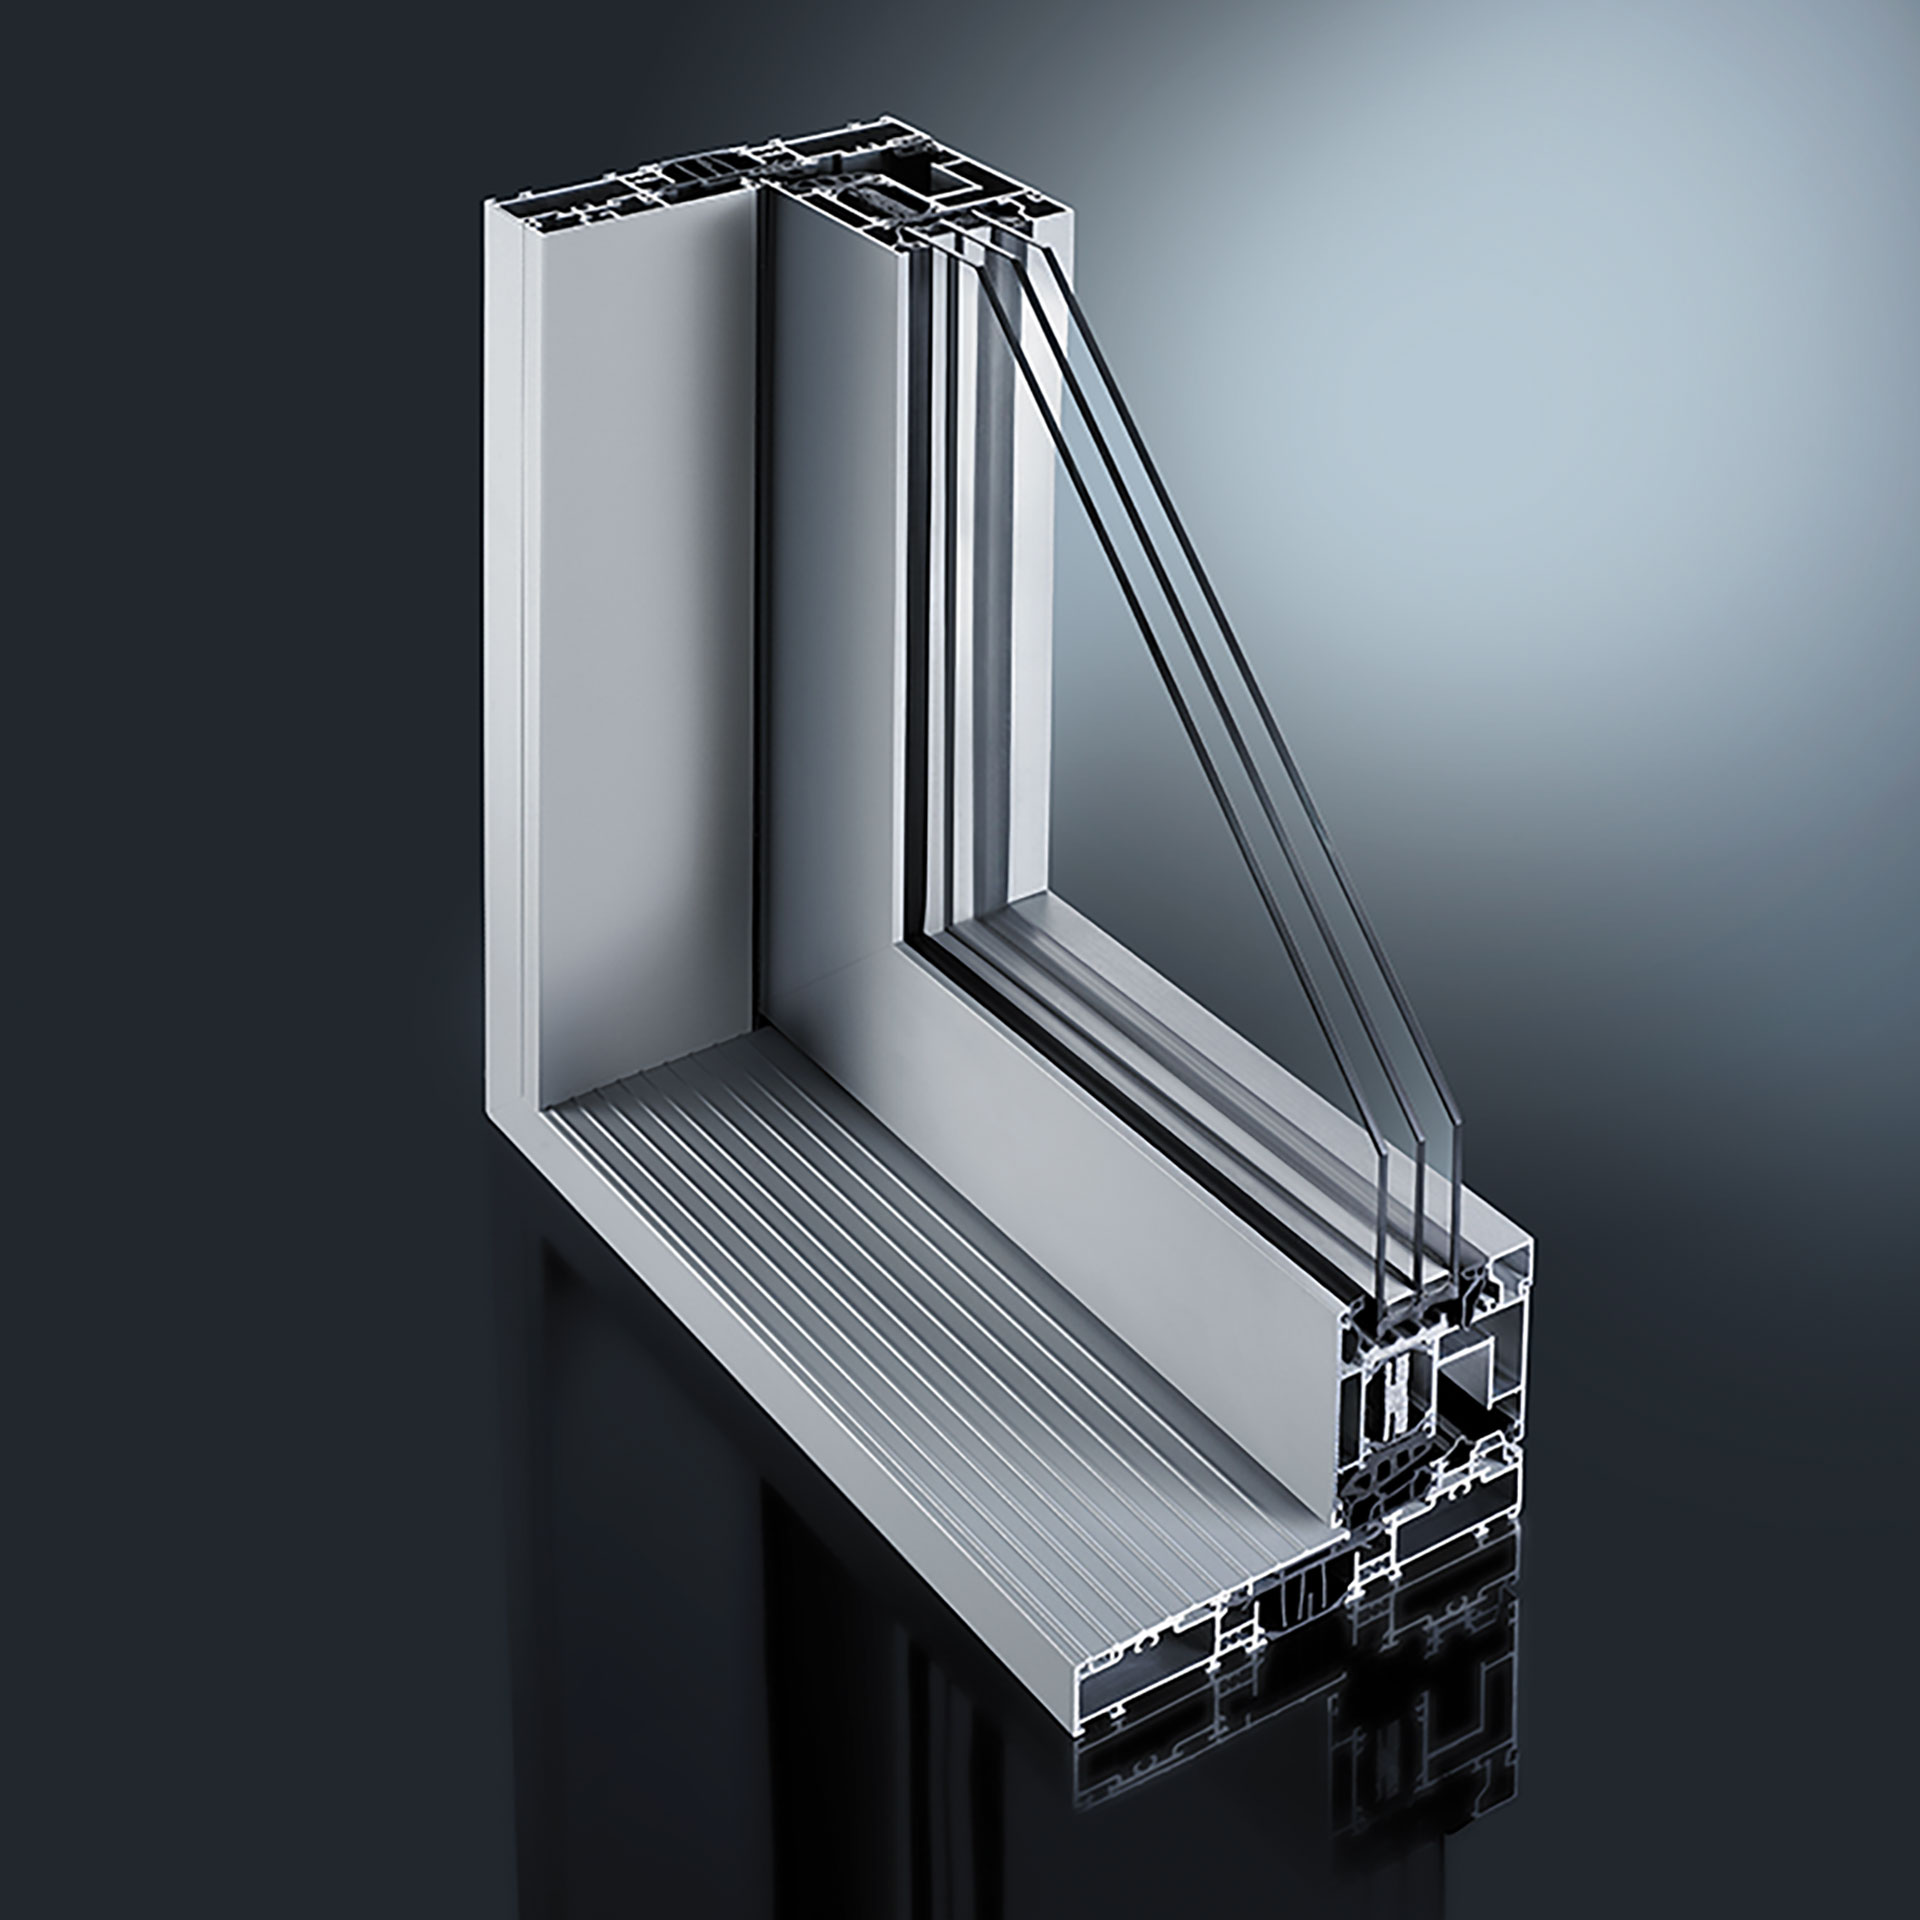 GUTMANN oferuje również klasyczne rozwiązania drzwi przesuwnych wykonanych z aluminium, jak również drzwi podnoszono-przesuwne klasy premium. Całość uzupełniają aluminiowe poszycia do drzwi przesuwnych wykonanych z tworzywa sztucznego.